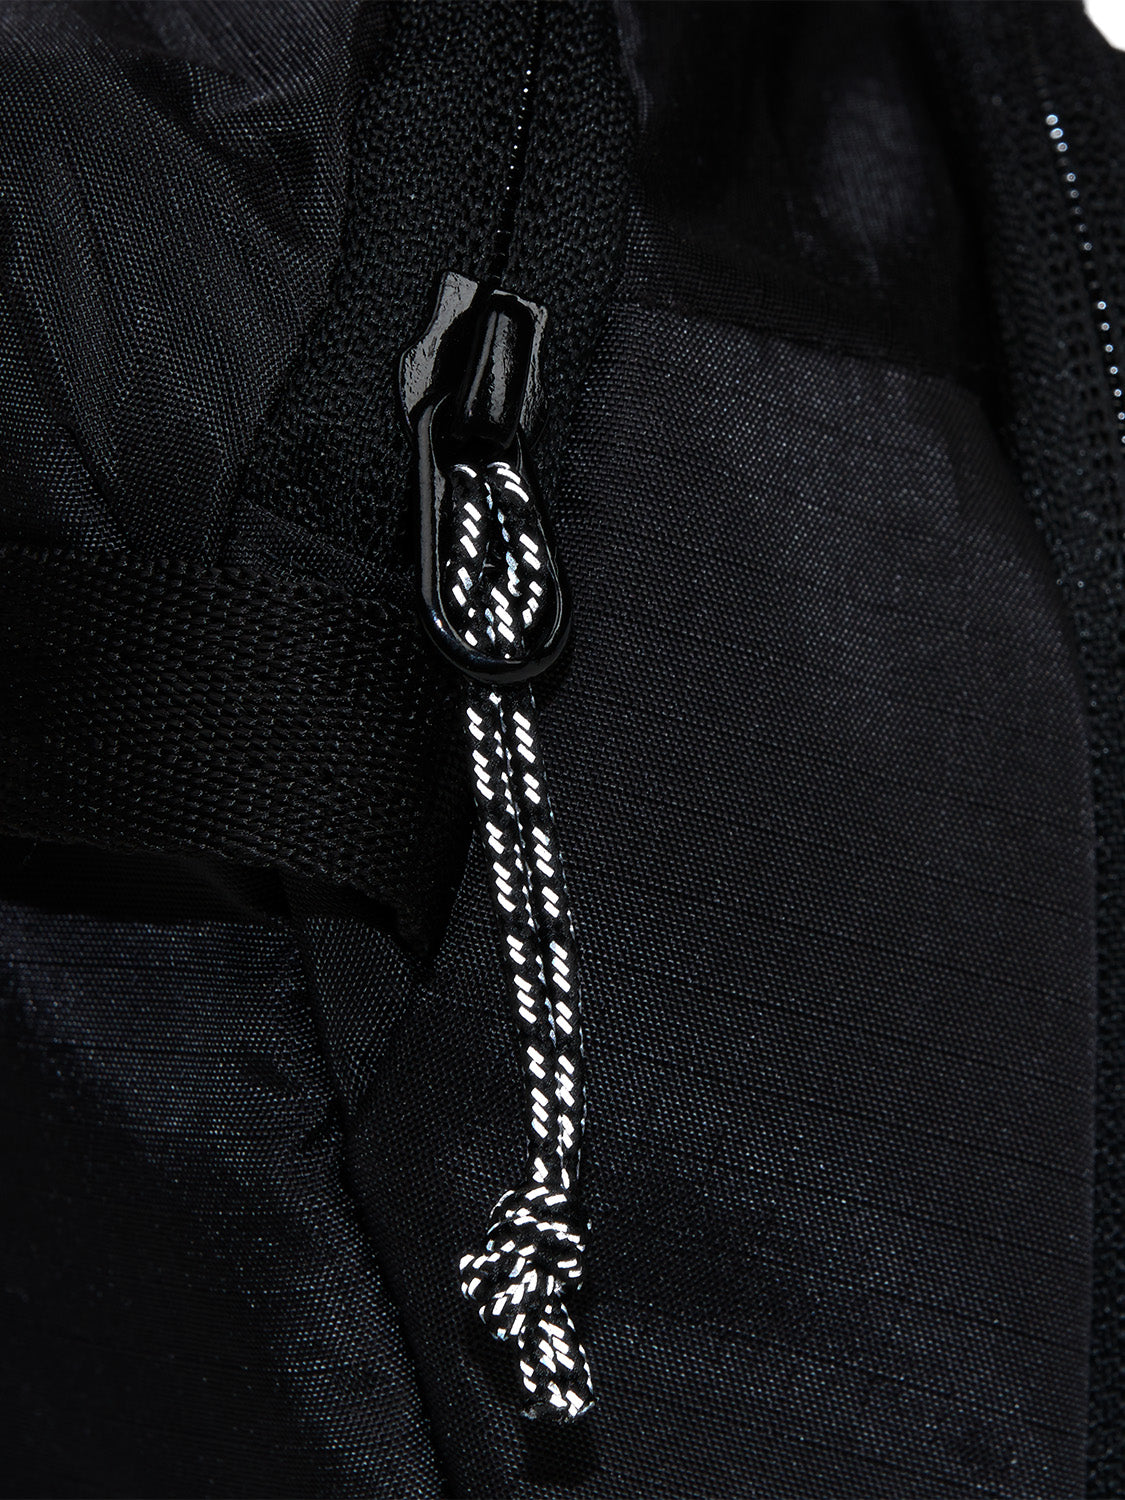 AEVOR-Sacoche-Bag-Ripstop-Black-detail